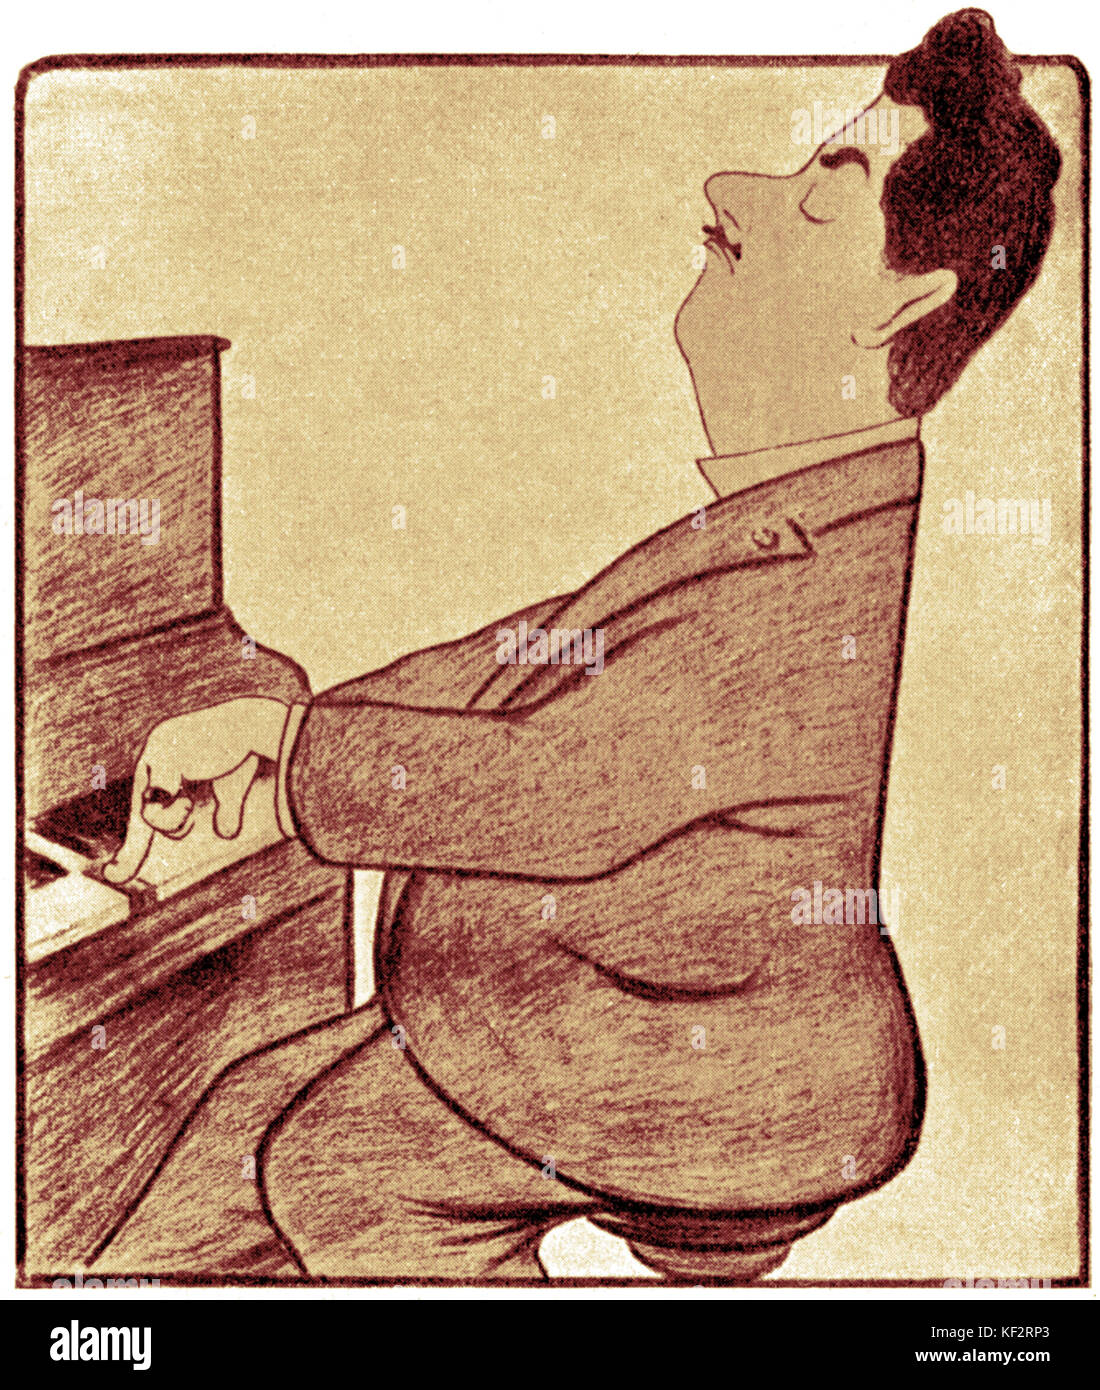 Puccini at the piano, caricature by L Cappiello Italian composer, 1858-1924. Stock Photo